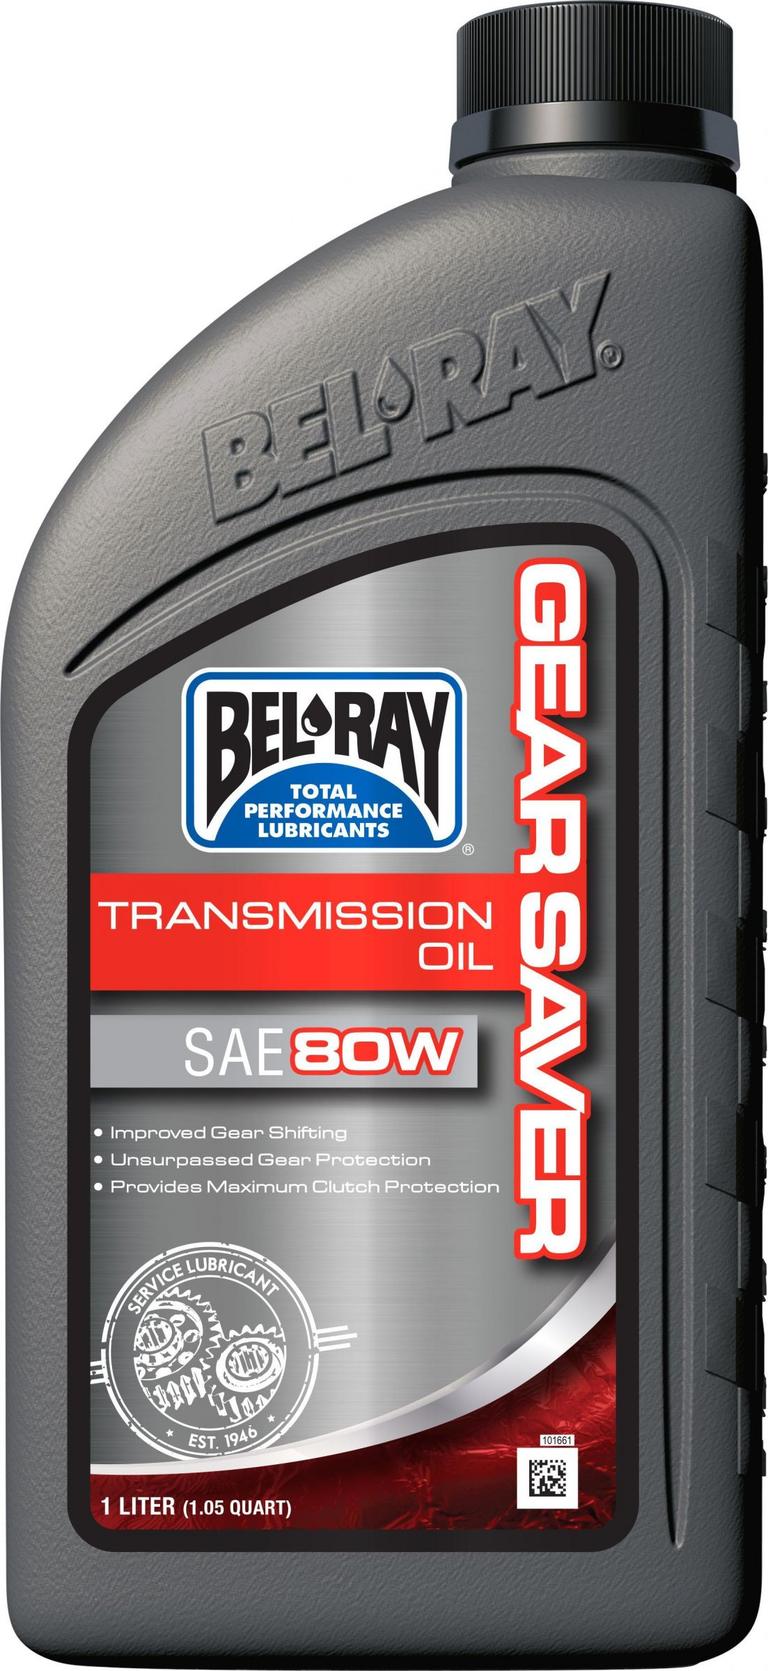 2X3S-BELRAY-99250-B1LW Gear Saver Transmission Oil - 80wt - 1L